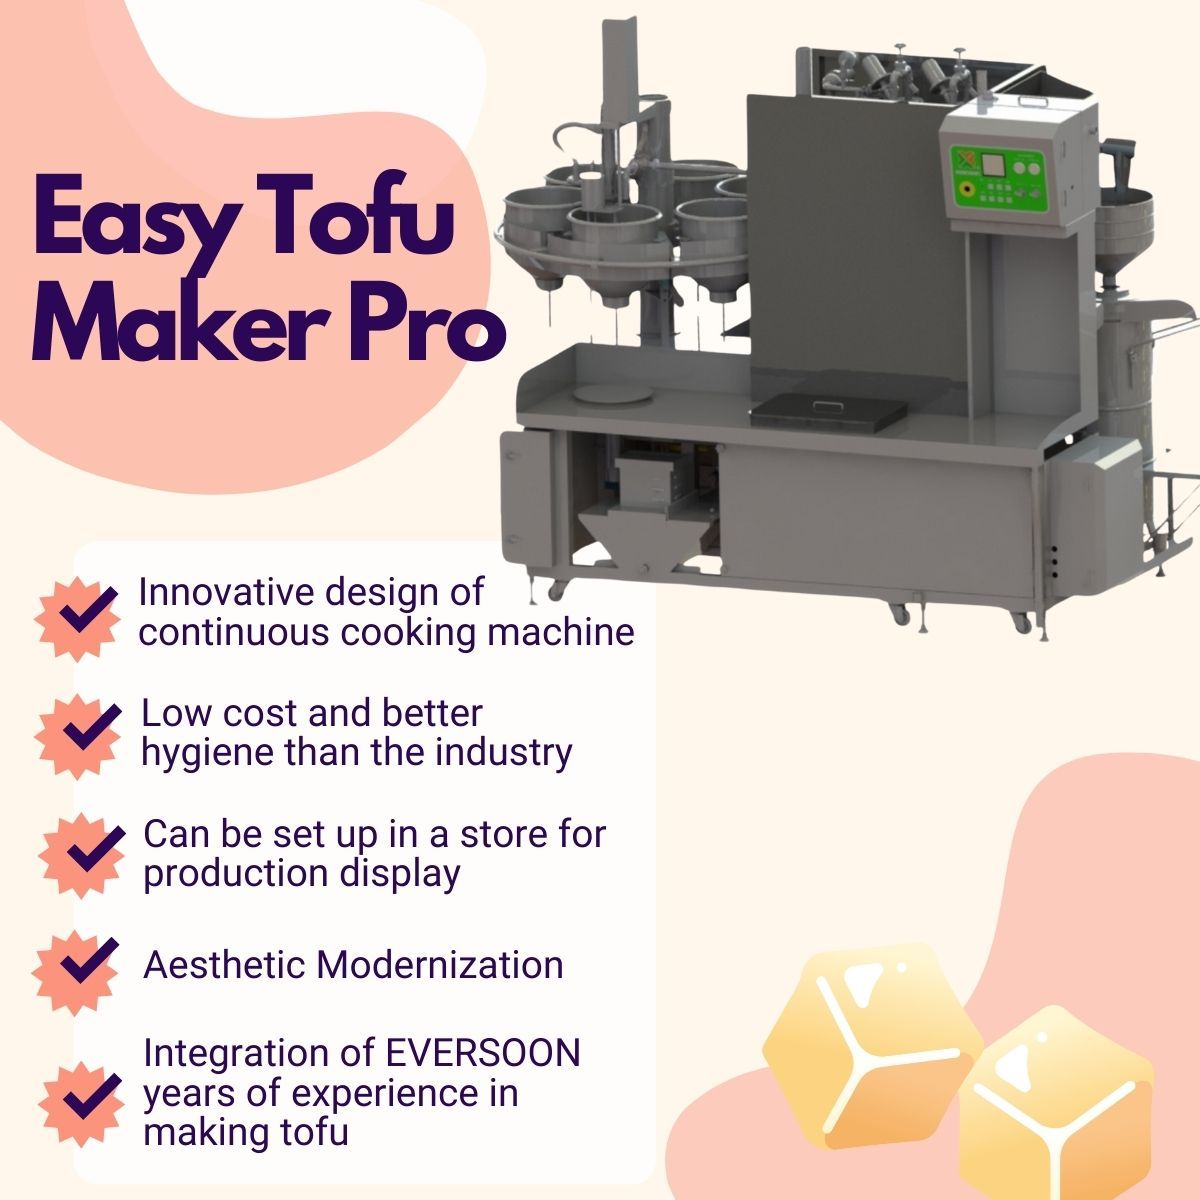 Automatický stroj na výrobu tofu, Easy Tofu Maker, Smažený tofu stroj, Priemyselná výroba tofu, malý tofu stroj, Výrobné zariadenie na sóju, Stroj na sójové mäso, Stroj na výrobu sójovej mlieka a tofu, Tofu zariadenie, Tofu stroj, stroj na výrobu tofu na predaj, výrobca stroja na výrobu tofu, výrobca stroja na výrobu tofu, cena stroja na výrobu tofu, Tofu mašinérie, Tofu mašinérie a vybavenie, Tofu výrobca, stroj na výrobu tofu, výroba tofu, výroba tofu vybavenia, stroj na výrobu tofu, cena stroja na výrobu tofu, výrobcovia tofu, výroba tofu, zariadenie na výrobu tofu, továreň na výrobu tofu, zariadenie na výrobu tofu, výrobná linka na tofu, cena výrobnej linky na tofu, tofuvýroba, automatický tofu stroj, Výrobník vegánskeho mäsa, Výrobná linka vegánskeho mäsa, Zariadenie na výrobu zeleninového tofu, Komerčný tofu stroj, Automatický sójový mliečny stroj, Automatický prístroj na výrobu sójového mlieka, Jednoduchý výrobník tofu, Výroba sójového mlieka, Stroj na výrobu sójového nápoja, komerčný stroj na výrobu sójového mlieka a tofu, stroj na výrobu sójového mlieka a tofu, Stroj na varenie sójového mlieka, stroj na výrobu sójového mlieka, Stroj na výrobu sójového mlieka vyrobený na Taiwane, Stroje na výrobu sójového mlieka, Stroje a zariadenia na výrobu sójového mlieka, výrobcovia sójového mlieka, Výroba sójového mlieka, výroba zariadení na sójové mlieko, výrobná linka na sójové mlieko, cena stroja na výrobu sójového mlieka, stroj na spracovanie sójových bôbov, stroj na výrobu sójového mlieka, stroj na výrobu sójového mlieka a tofu, komerčný výrobca sójového mlieka, komerčný stroj na sójové mlieko, komerčný stroj na sójové bôby, komerčný stroj na sójové mlieko, sójový mliečny kotle pre podnikateľské účely, sójový mliečny mlynček pre podnikateľské účely, sójový mliečny stroj pre podnikateľské účely, stroje na sójové mlieko pre podnikateľské účely, zariadenie na výrobu sójového mlieka pre obchodné účely